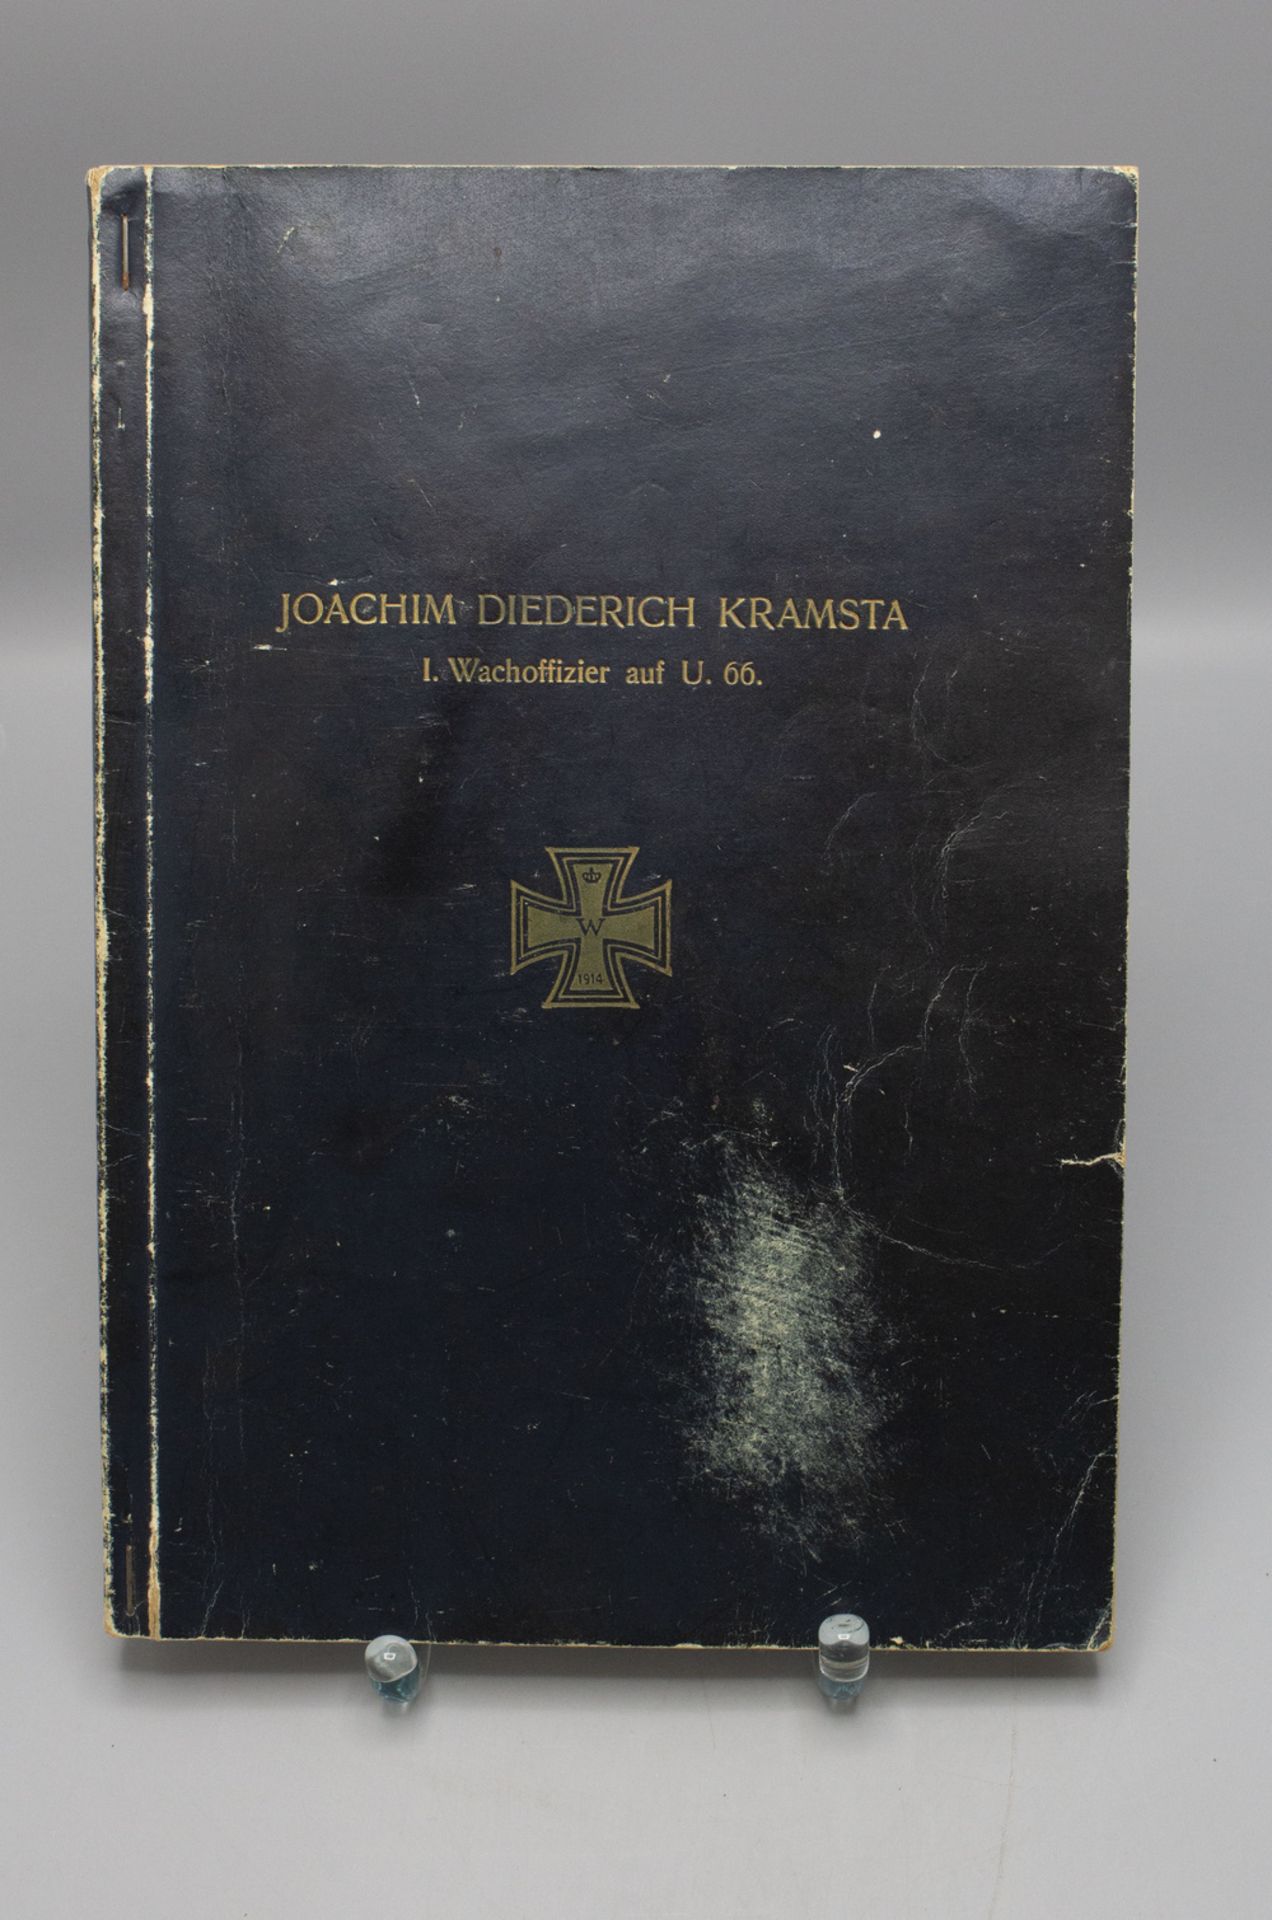 Biographie / A biography des Joachim Diederich Kramsta, 1. Wachoffizier auf U66, 1917/18